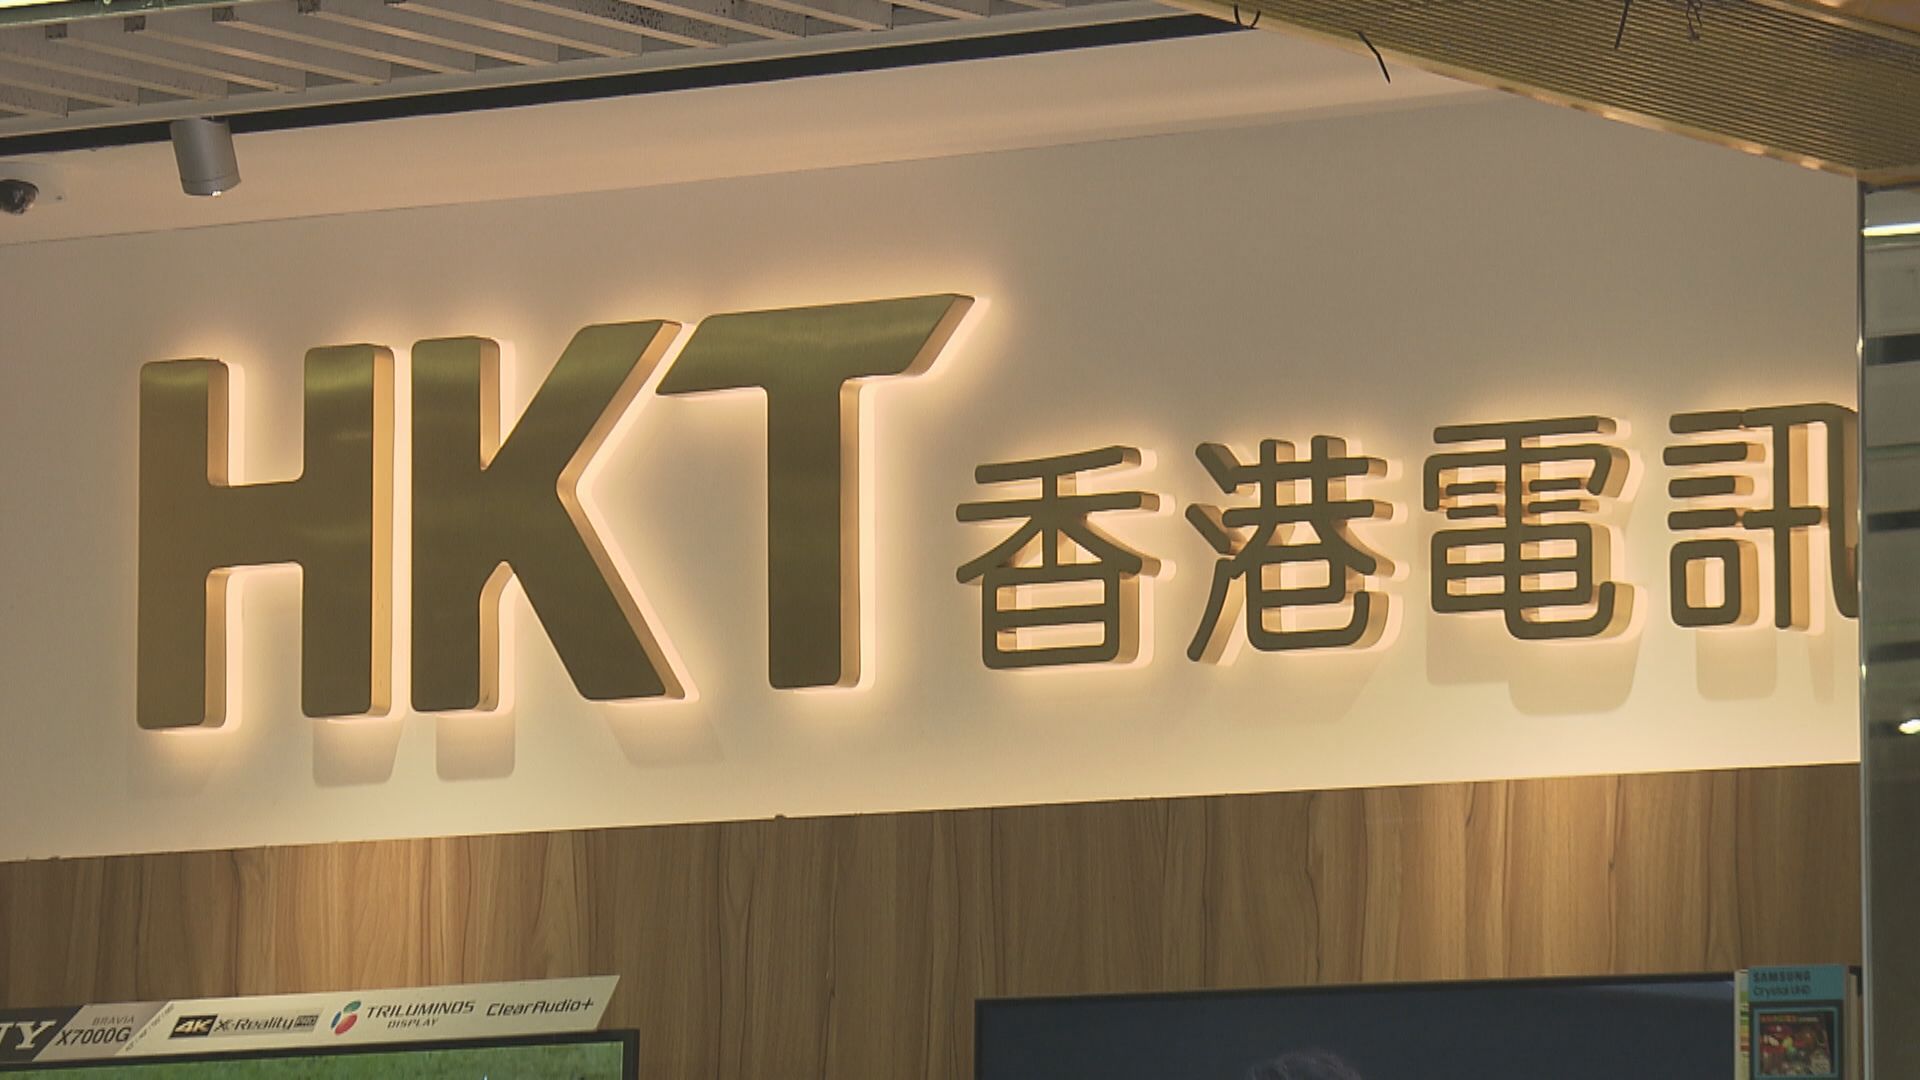 【公司業績】香港電訊去年純利勝預期 經調整資金流增2.4%